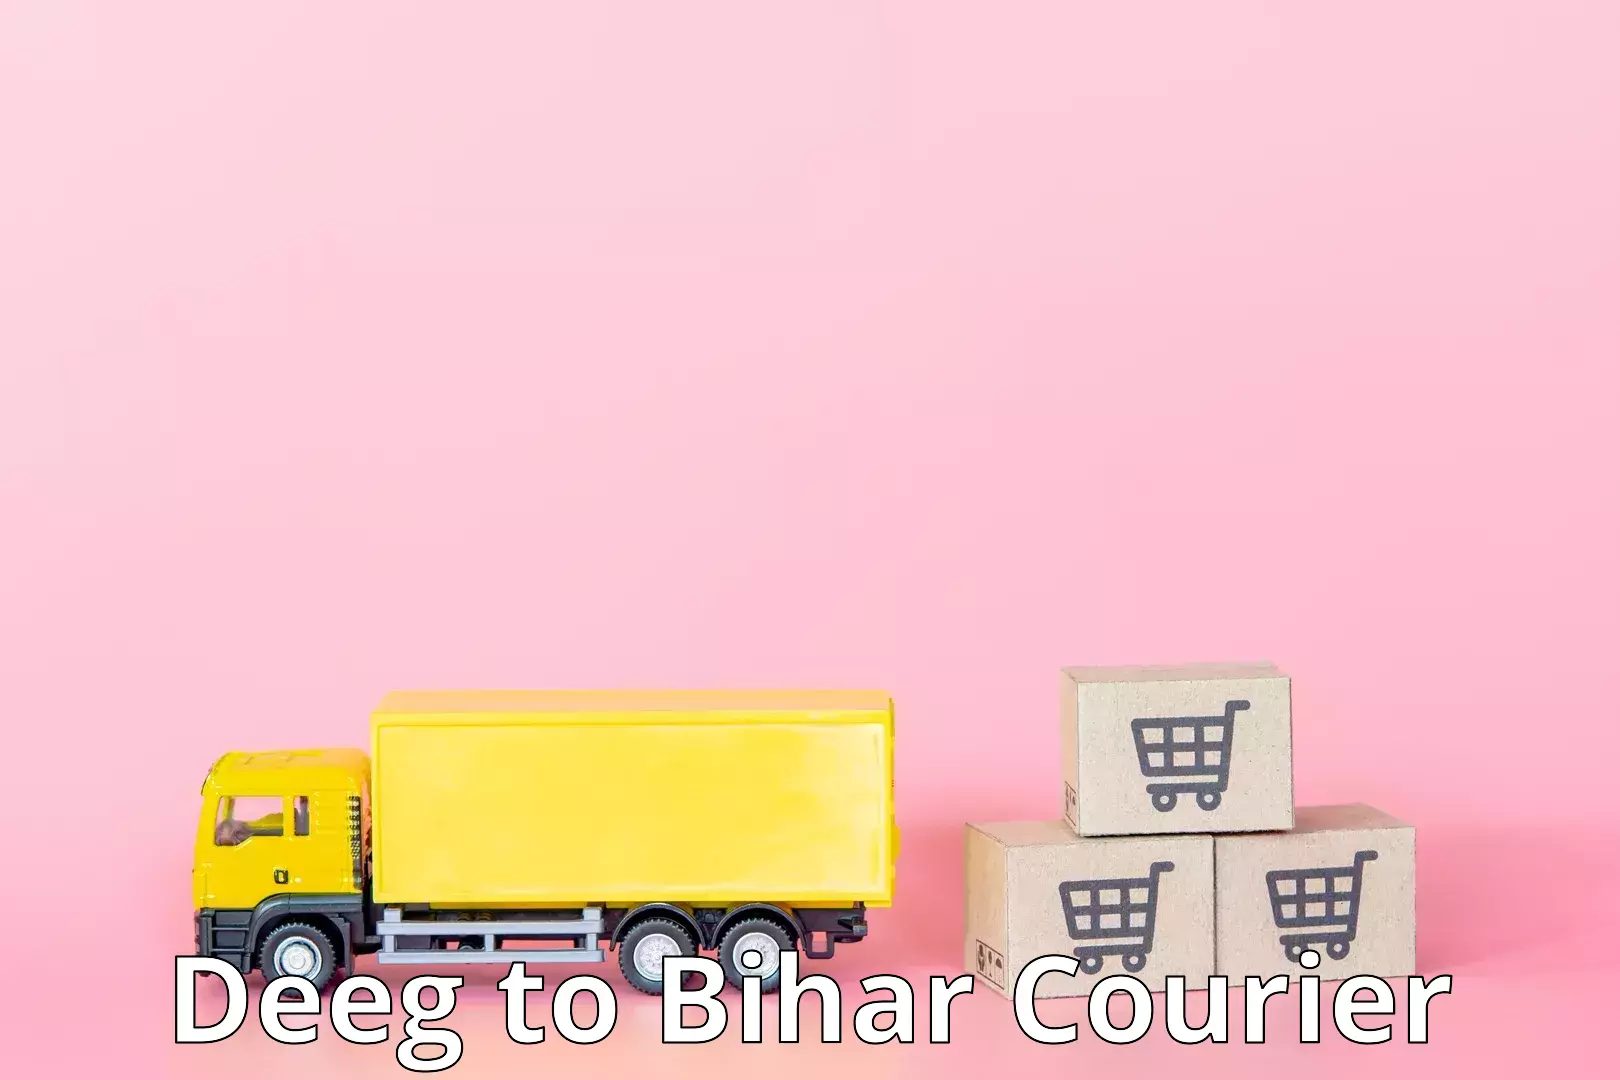 Modern courier technology Deeg to Bihar